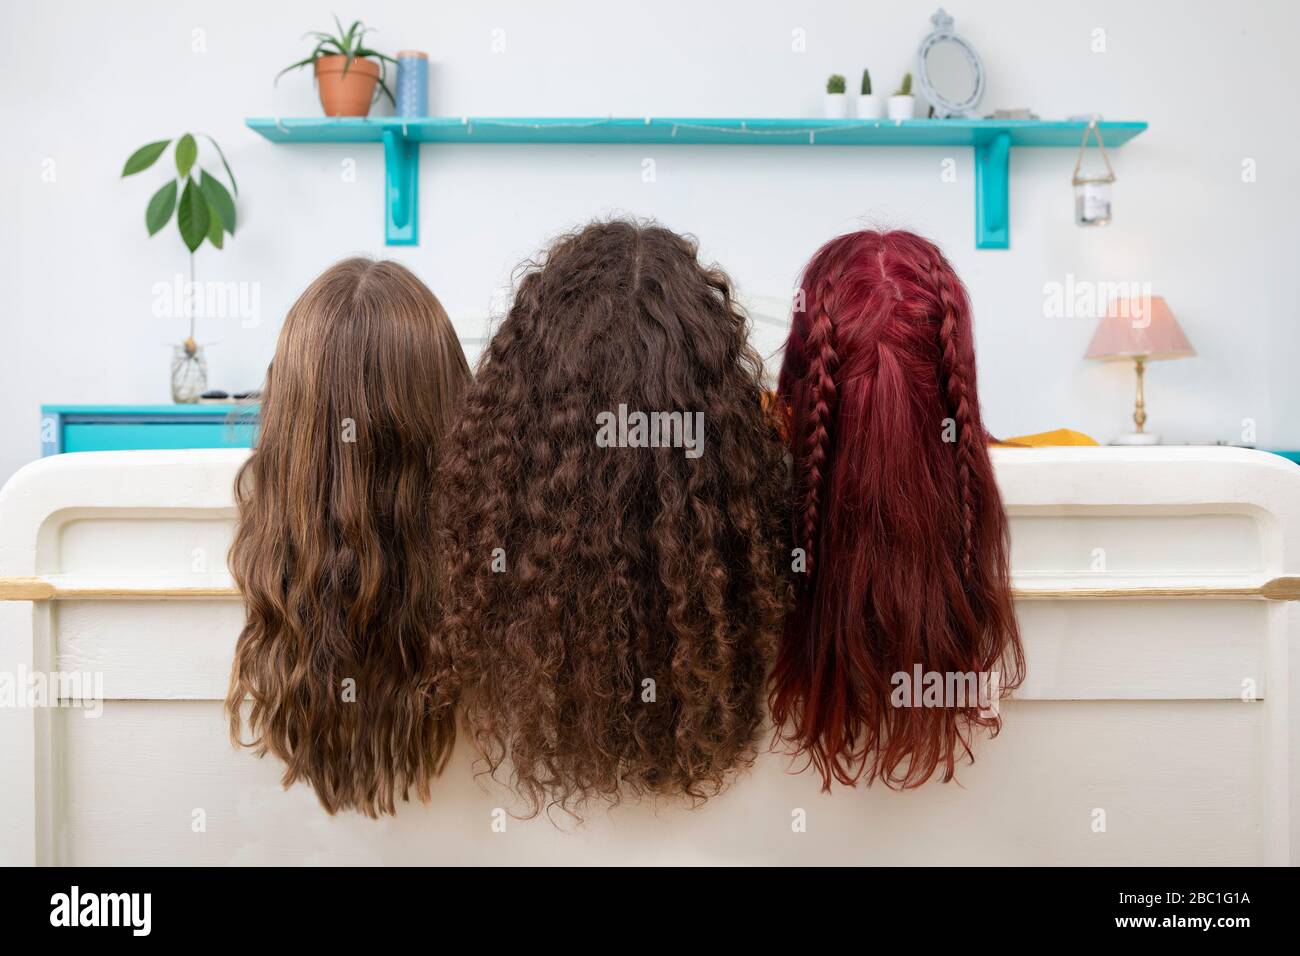 Vue arrière de trois sœurs avec de longs cheveux Banque D'Images